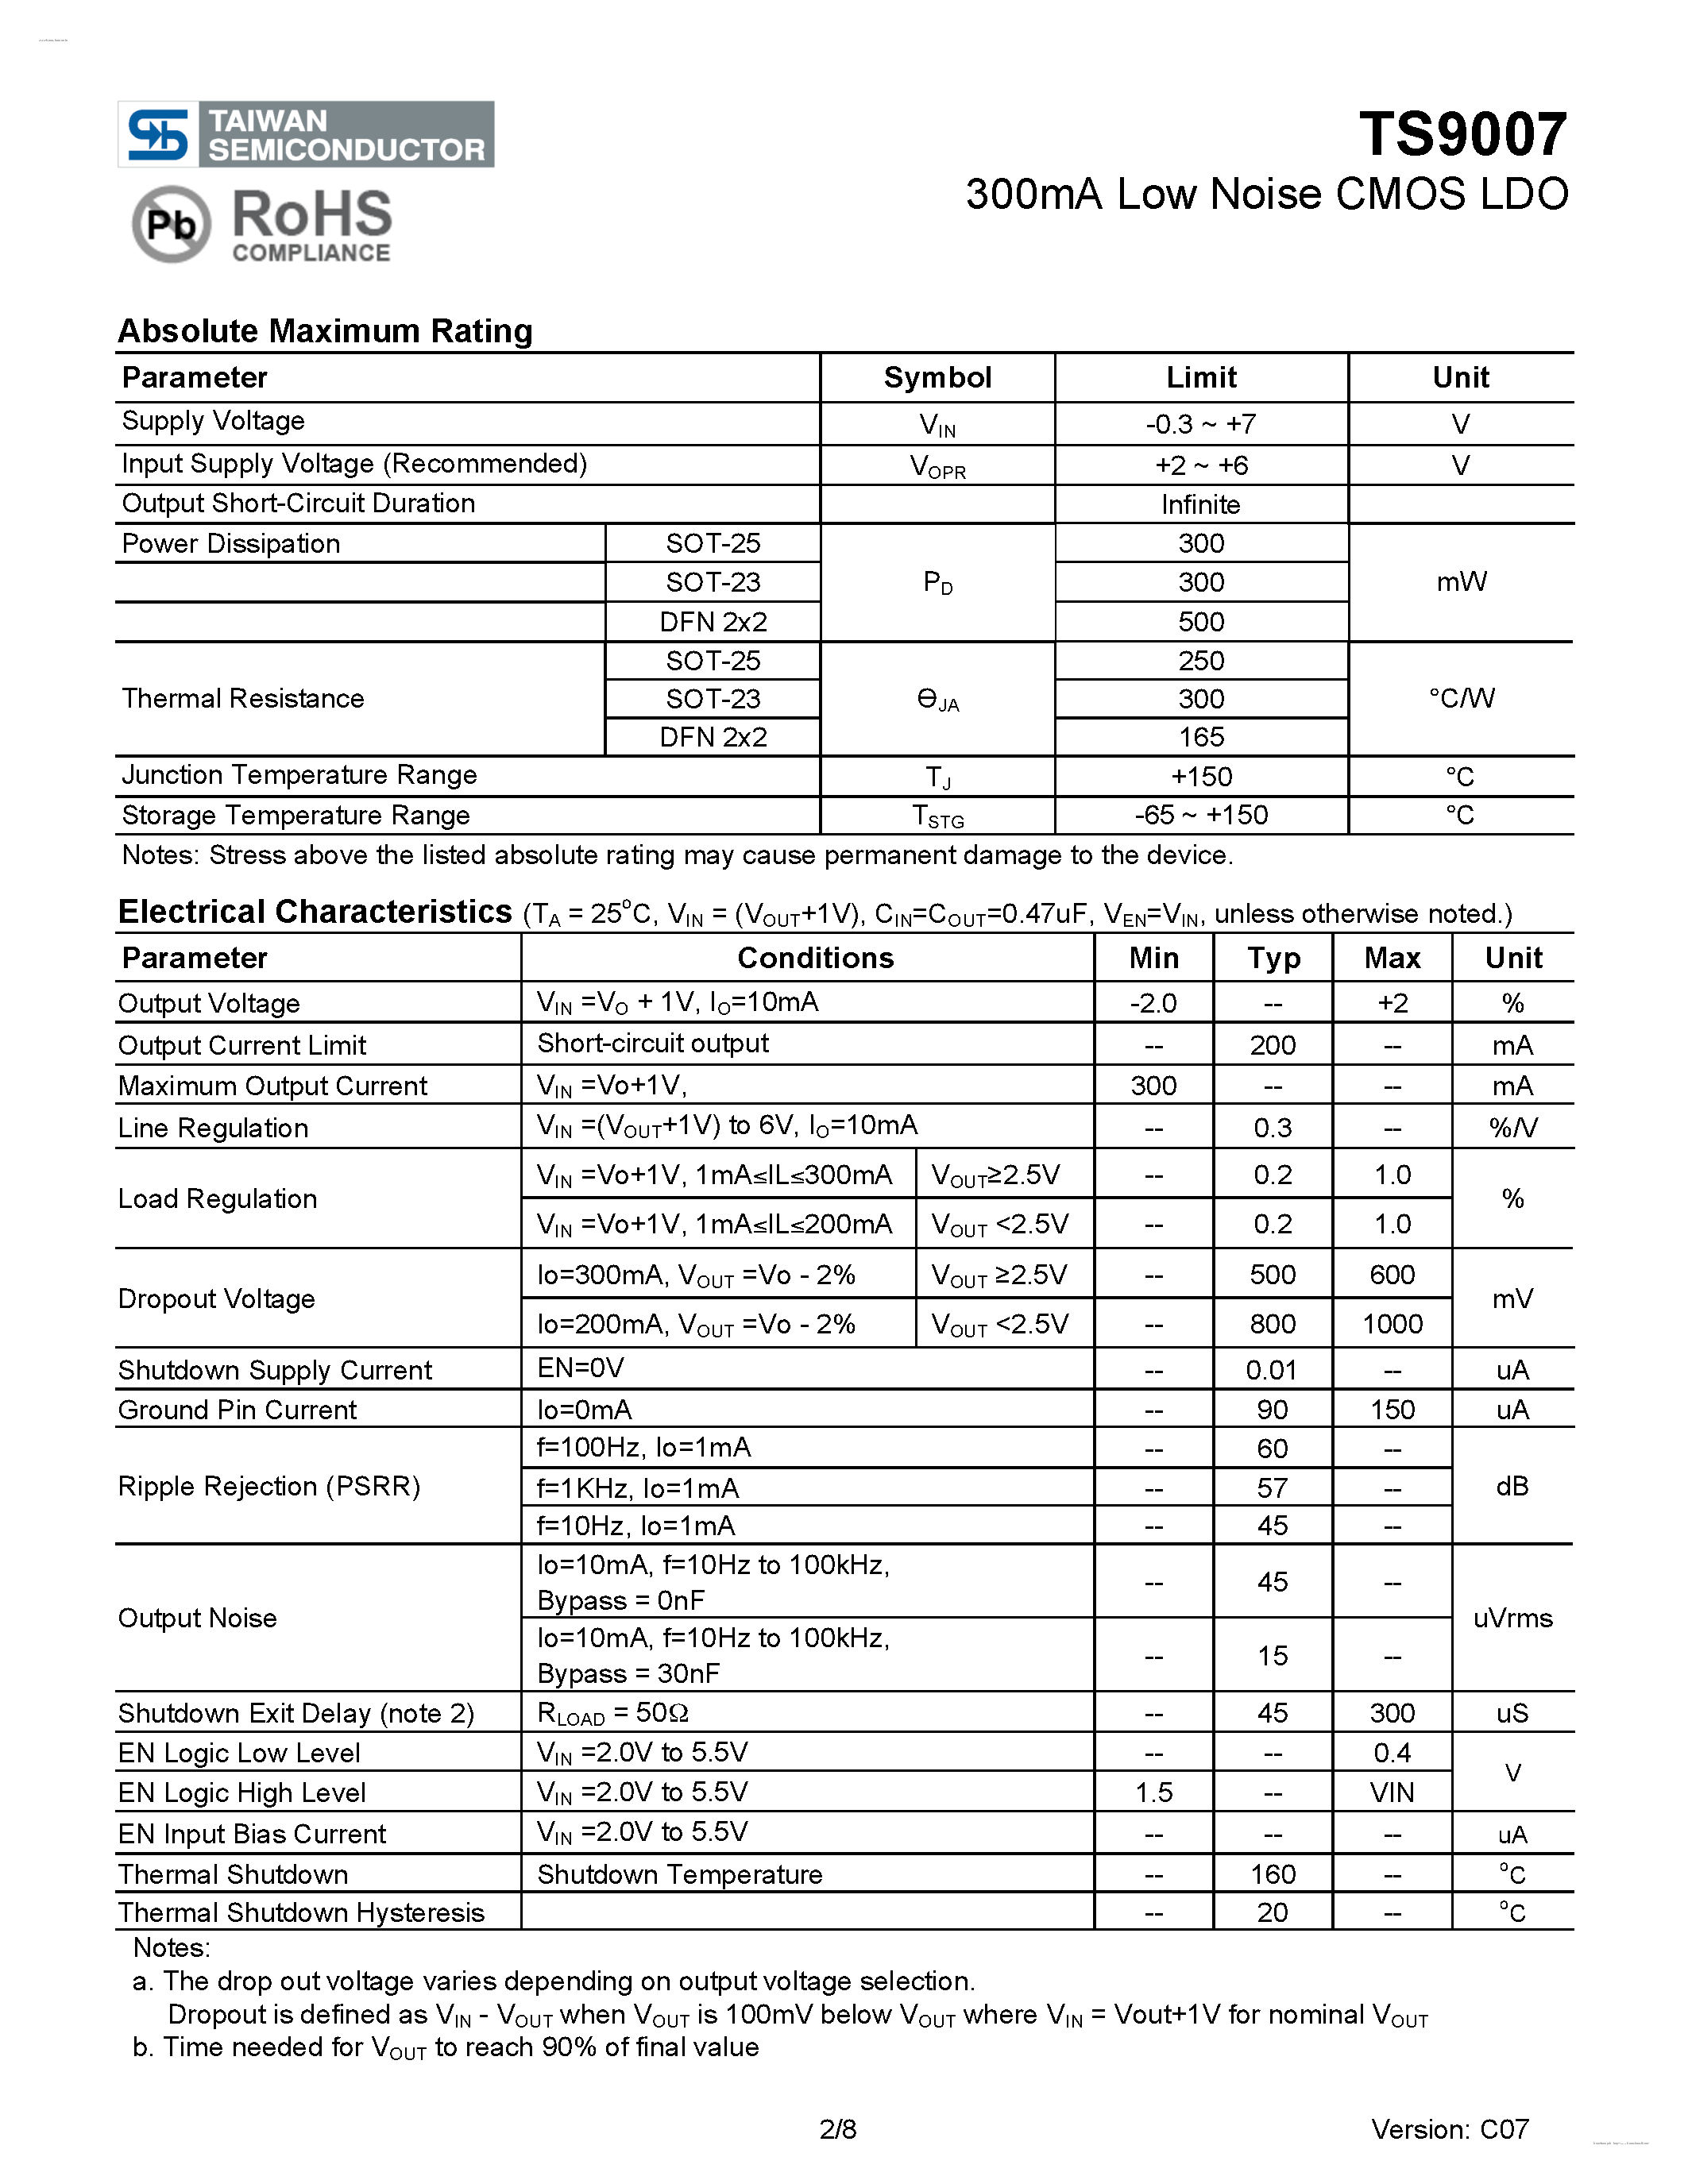 Даташит TS9007 - 300mA Low Noise CMOS LDO страница 2